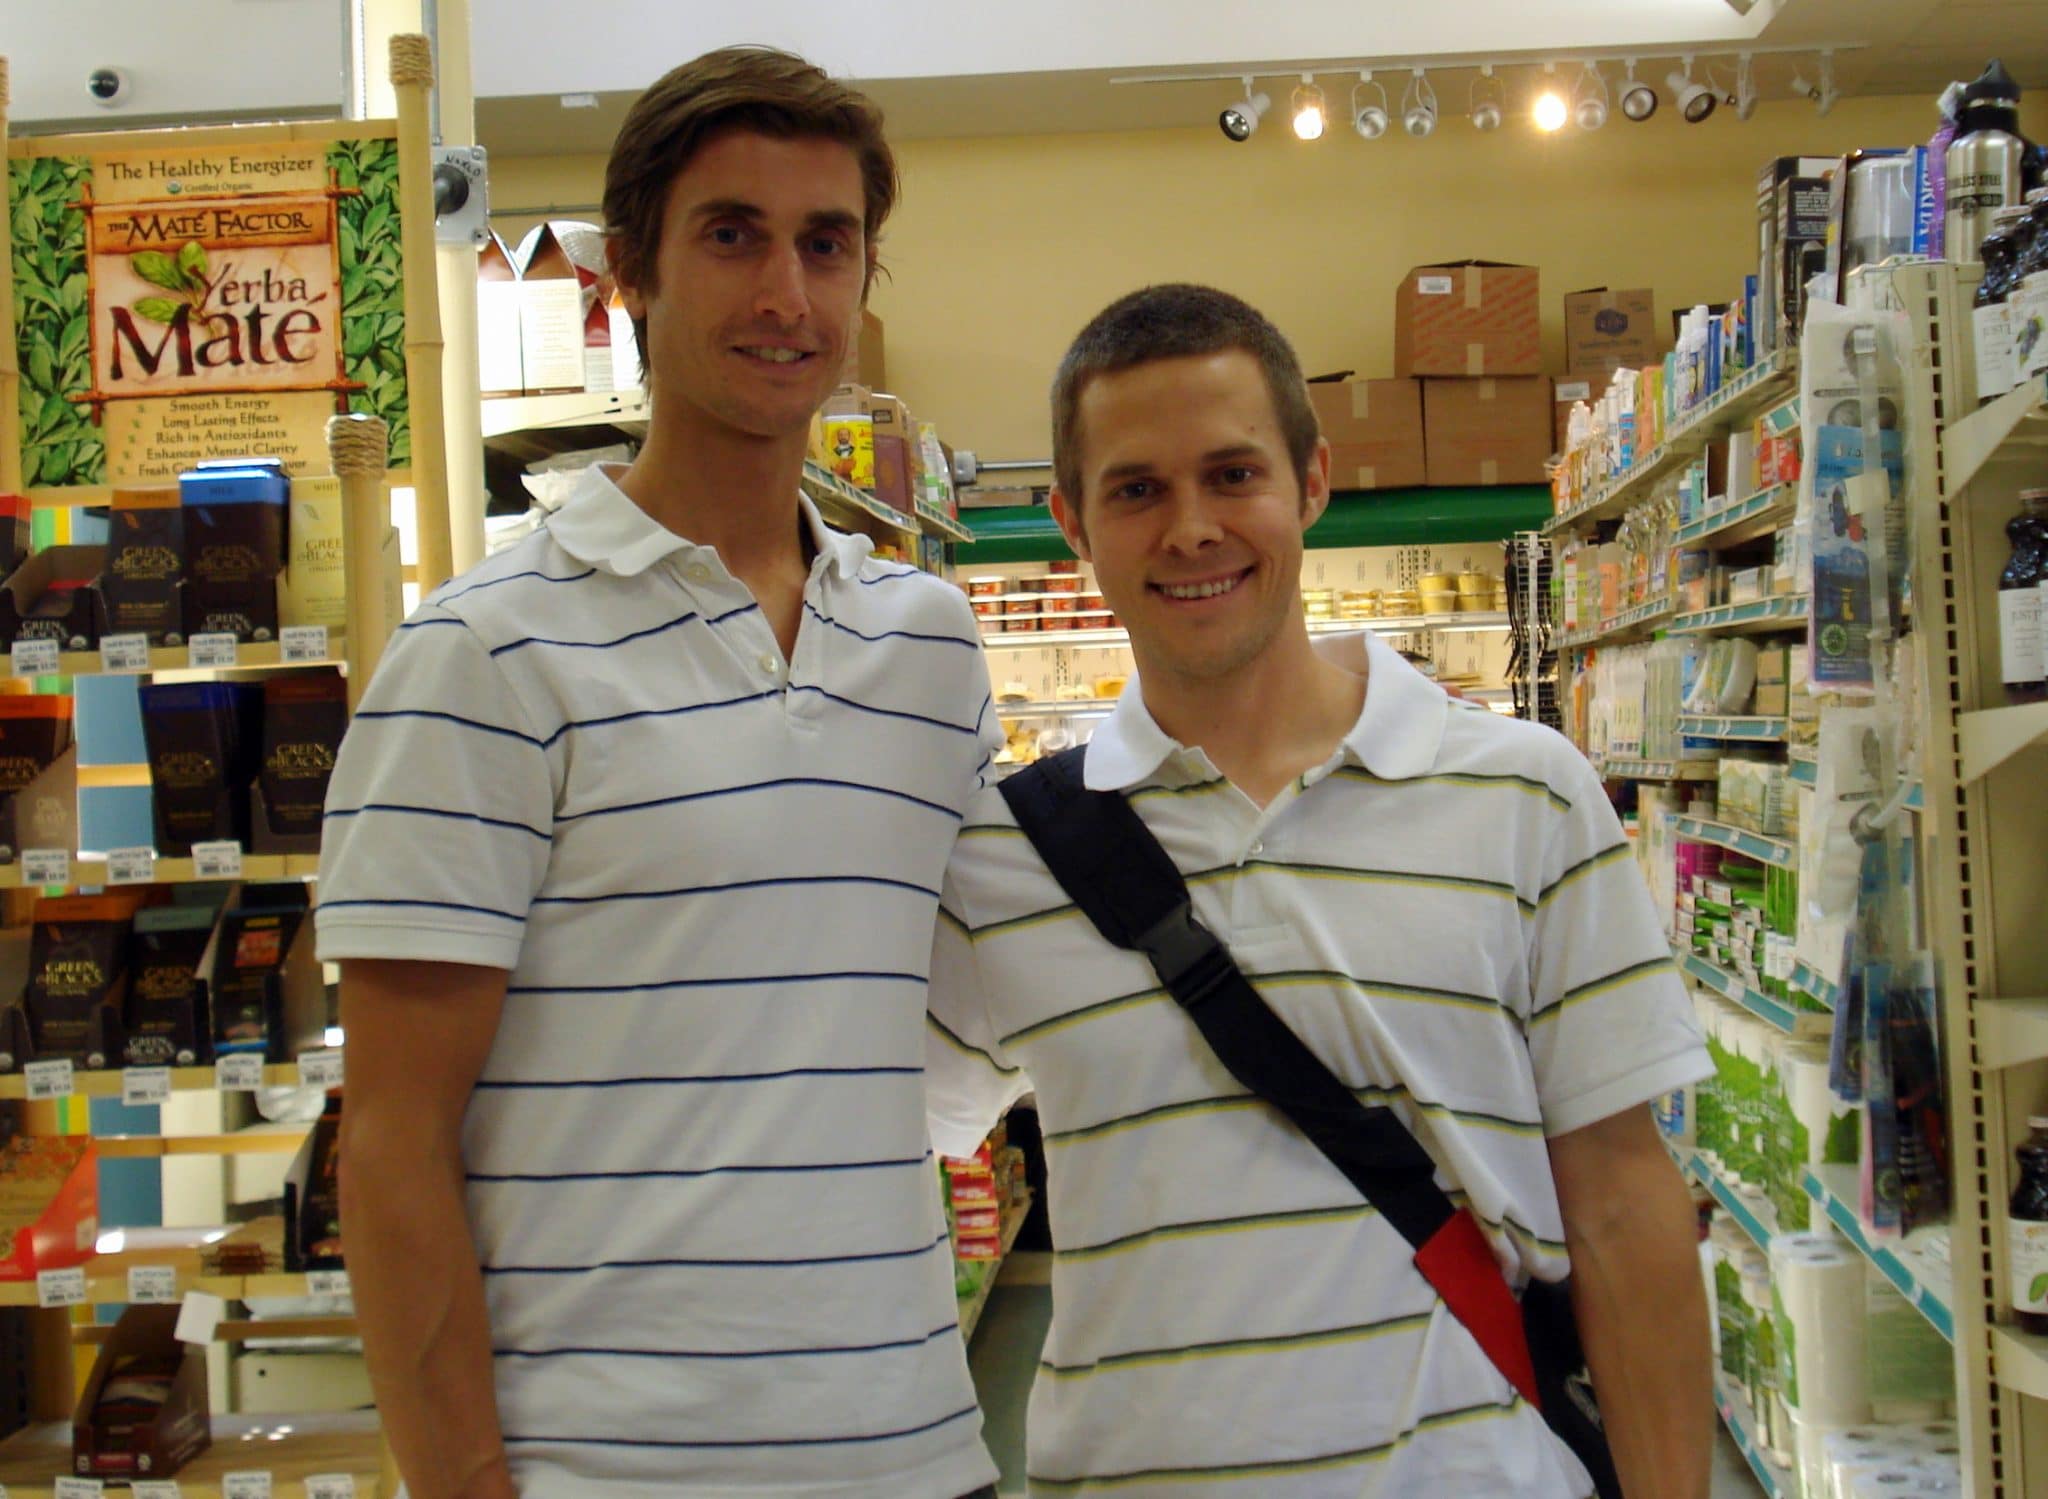 Matt and Brendan Brazier in matching shirts